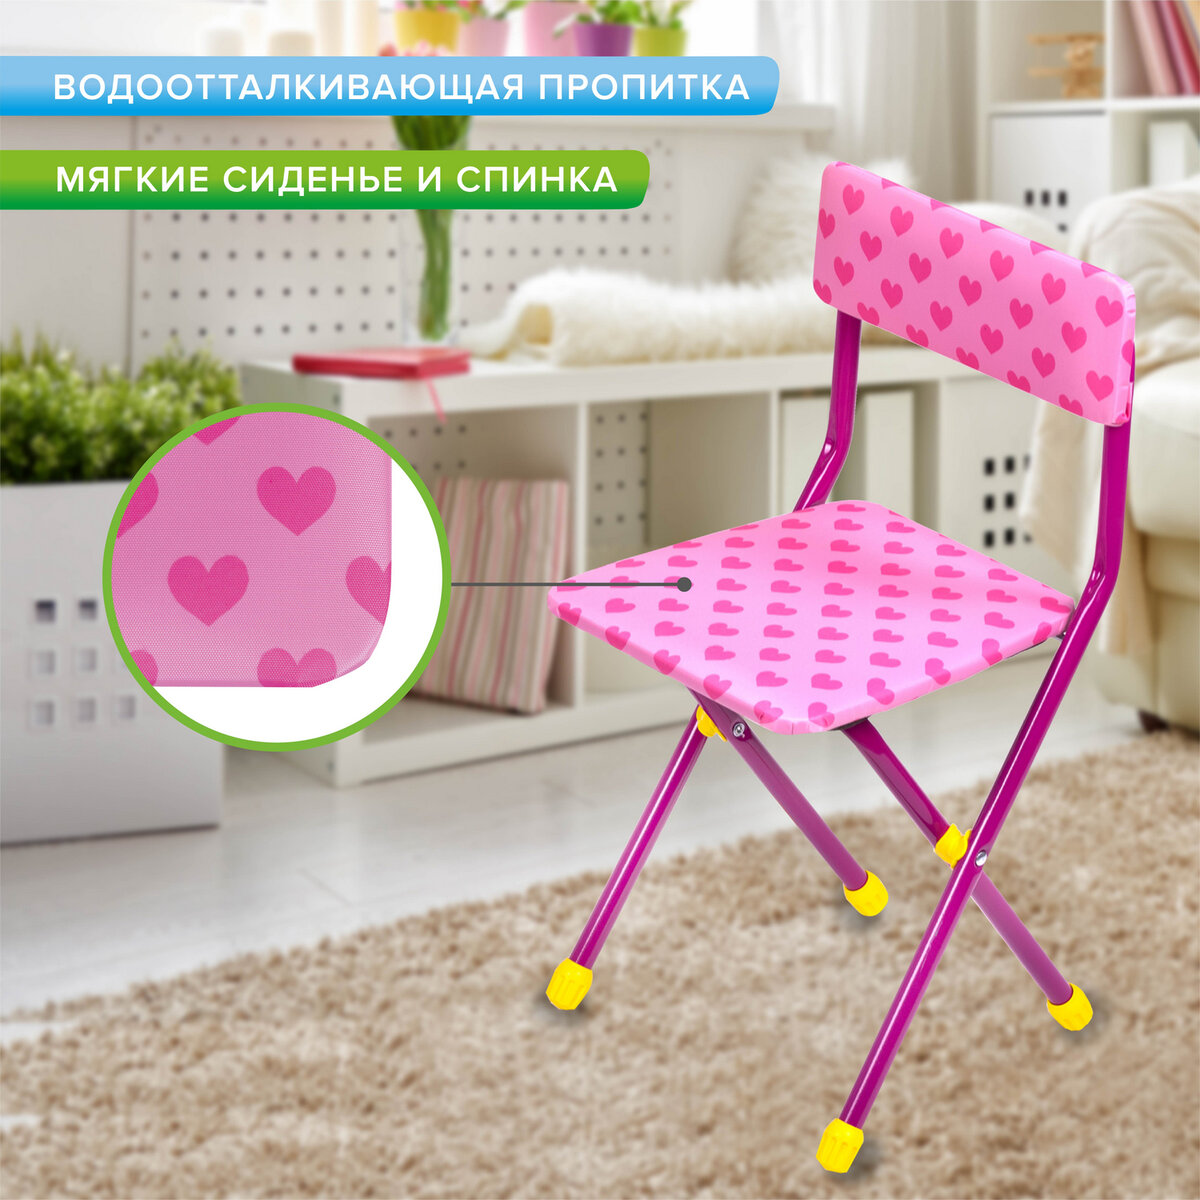 Столик и стульчик детский Brauberg игровой набор для развивающих игр для девочки розовый Принцесса - фото 6